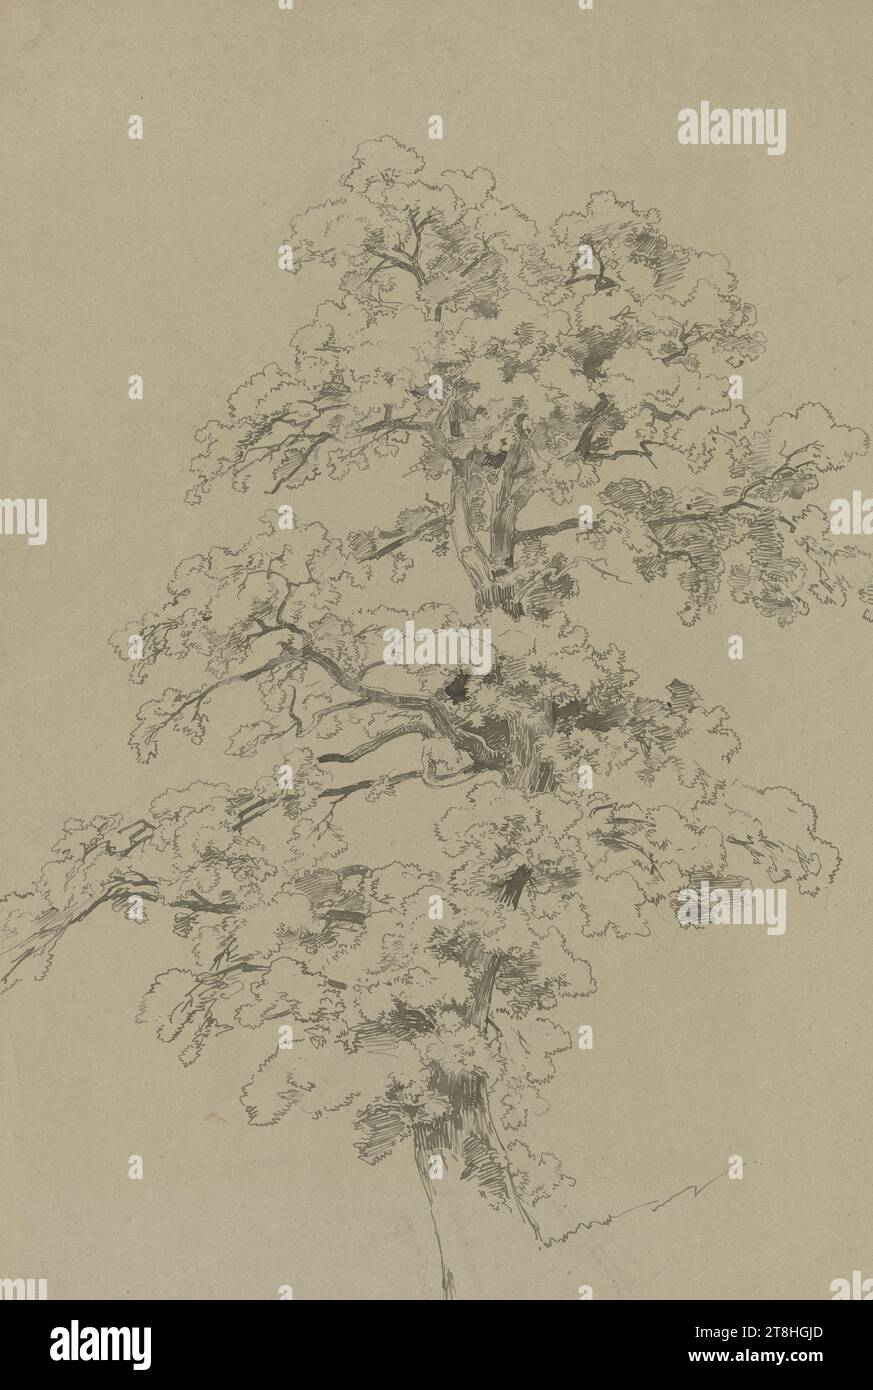 CARL THEODOR REIFFENSTEIN, A Tree, luglio 1842, foglio, 671 x 468 mm, penna in grigio-marrone su matita su carta pergamena marrone, Un albero, CARL THEODOR REIFFENSTEIN, XIX SECOLO, DISEGNO, penna di colore grigio-marrone su matita su carta pergamena marrone, INCHIOSTRO, INCHIOSTRO?, MISCELA GRAFITE-ARGILLA, CARTA VELIN, DISEGNO A PENNA, DISEGNO A MATITA, TEDESCO, STUDIO AD ALBERO, STUDIO DI VIAGGIO, STUDIO, datato in basso a destra, con la penna in marrone scuro, luglio 1842. Foto Stock